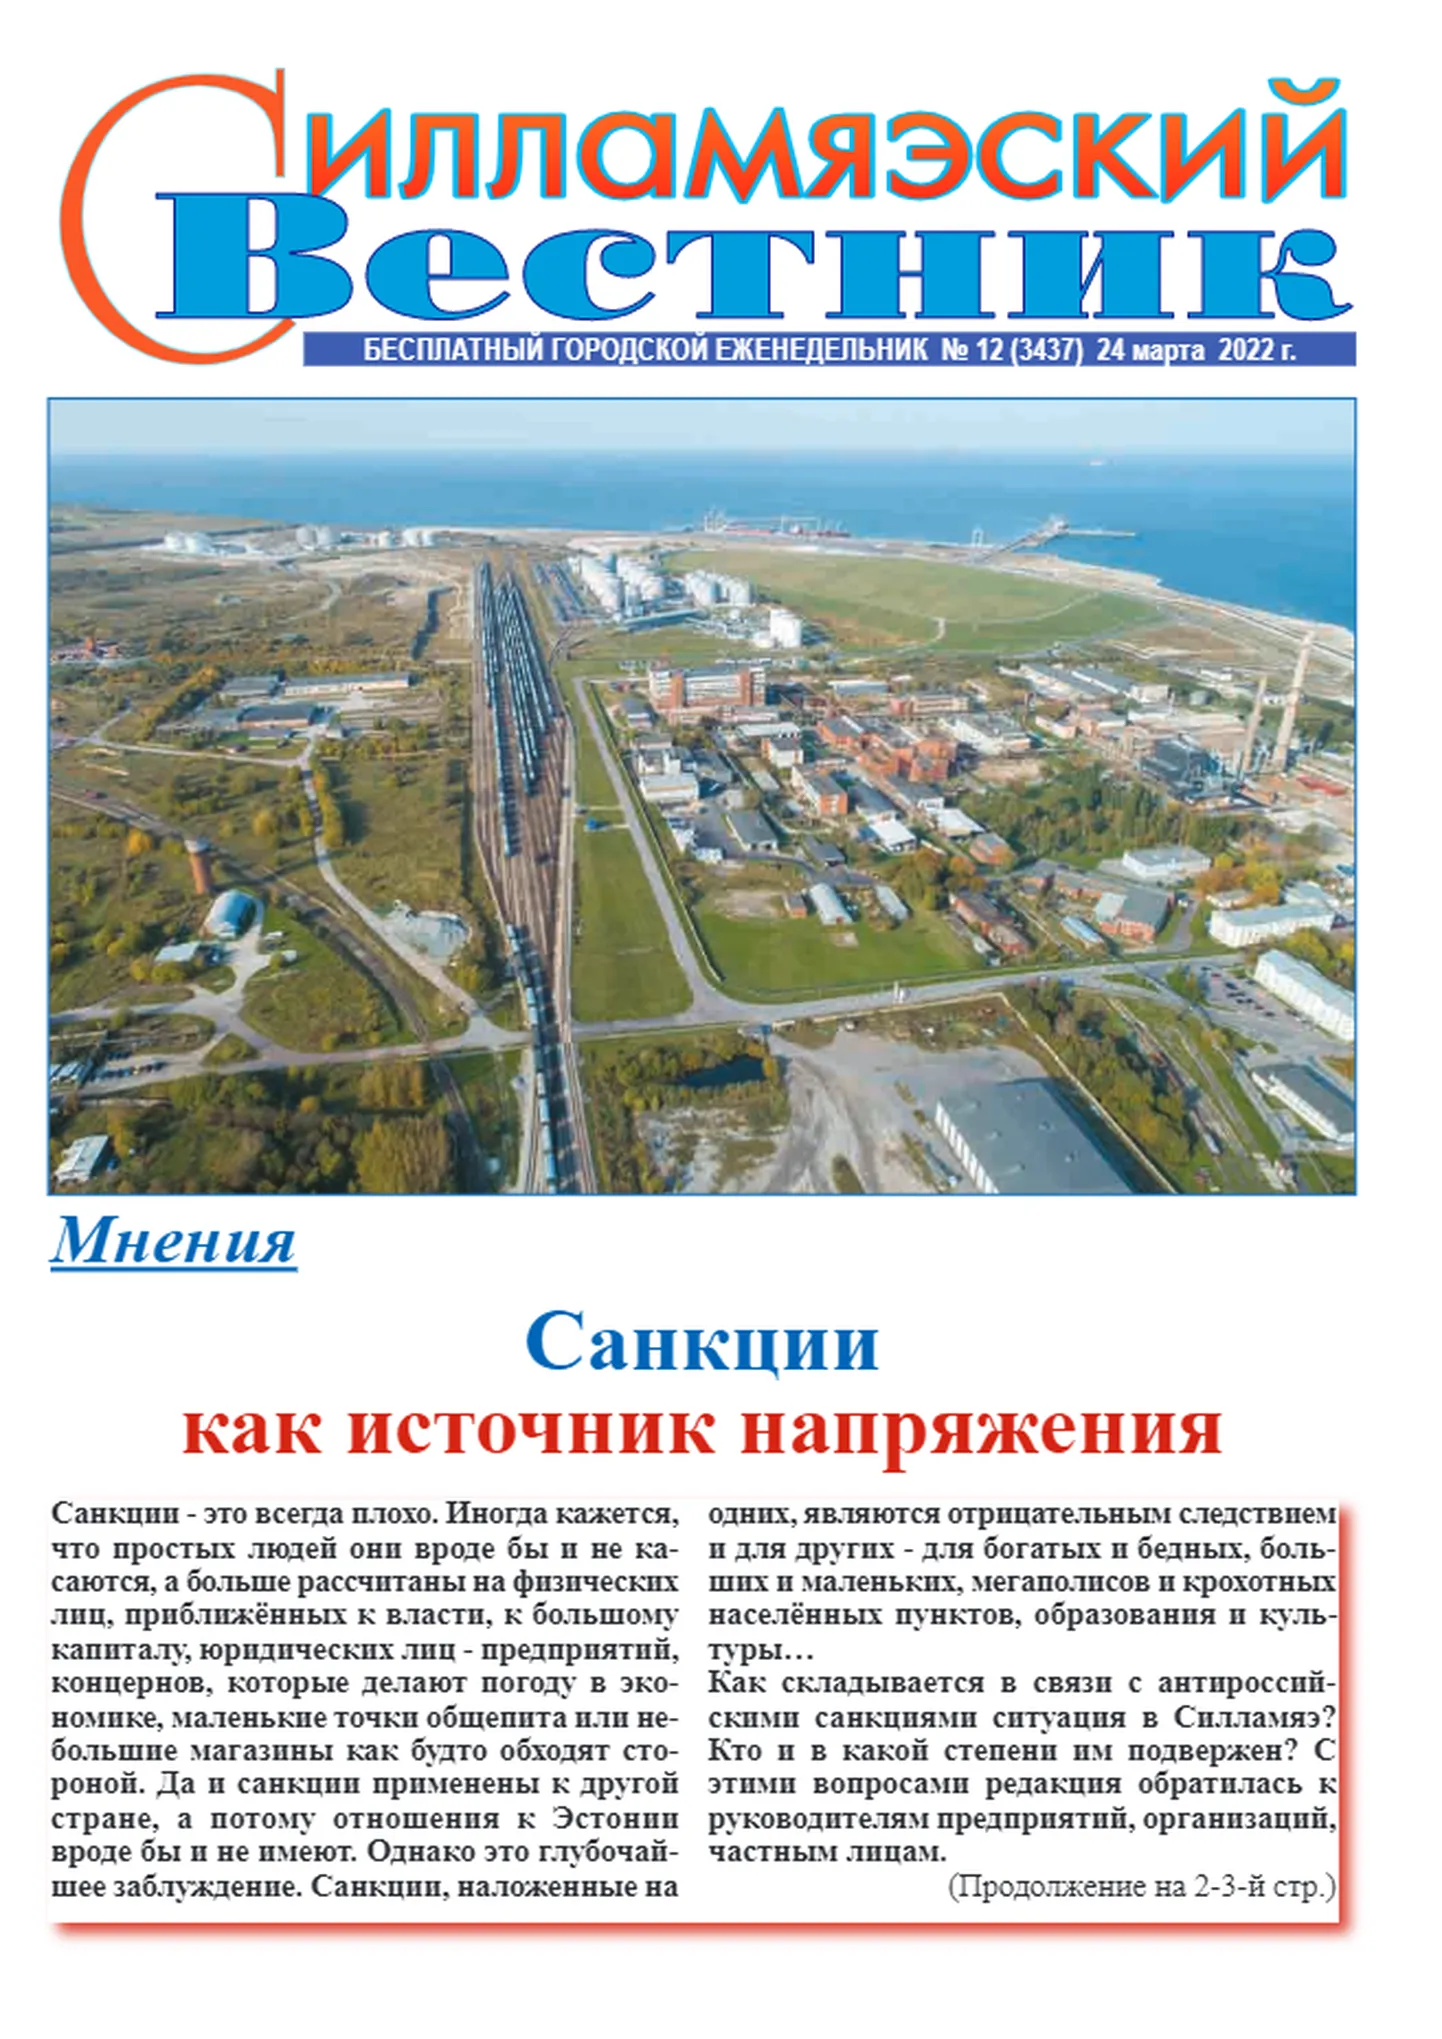 Муниципальная газета Силламяэ сообщает на первой полосе, что источником напряженности являются санкции, введенные странами свободного мира в отношении России за вторжение в Украину.